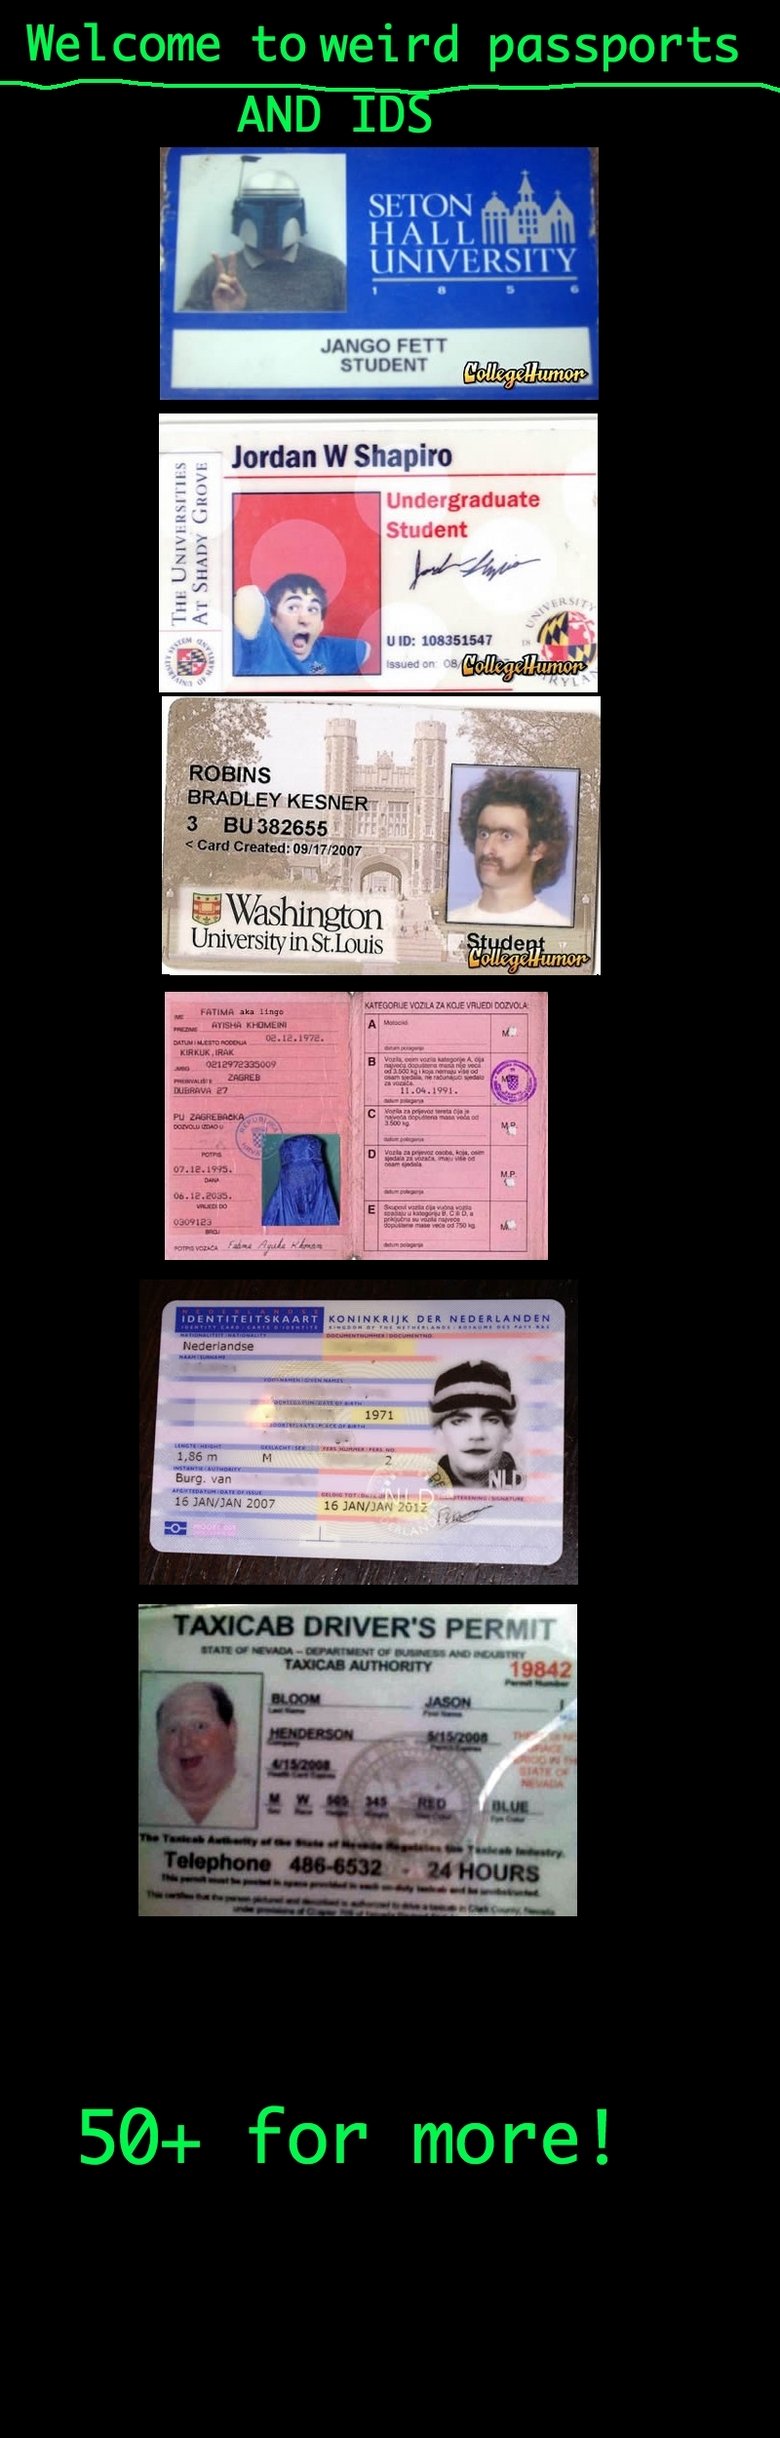 Weird Id Cards and Passport pics. . Welcome to weird passports AND IDS JAMES FETT Jordan W Shapiro I mi: . r. graduate I it L} gent an 332555 6 REM! t Hni Irwin